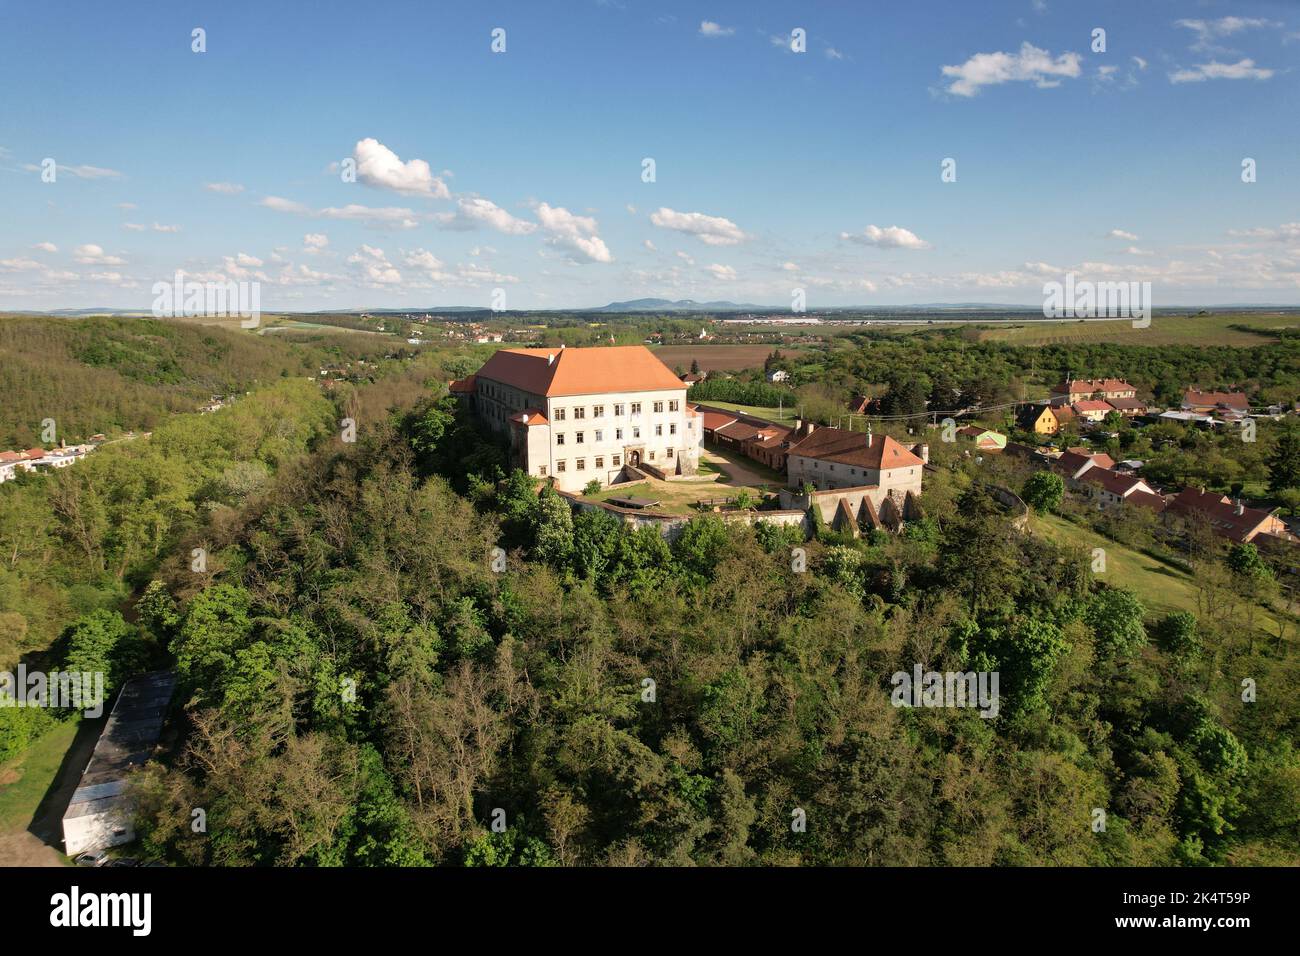 Castello di Dolni Kounice, regione della Moravia, repubblica Ceca, Europa, vista panoramica aerea Foto Stock